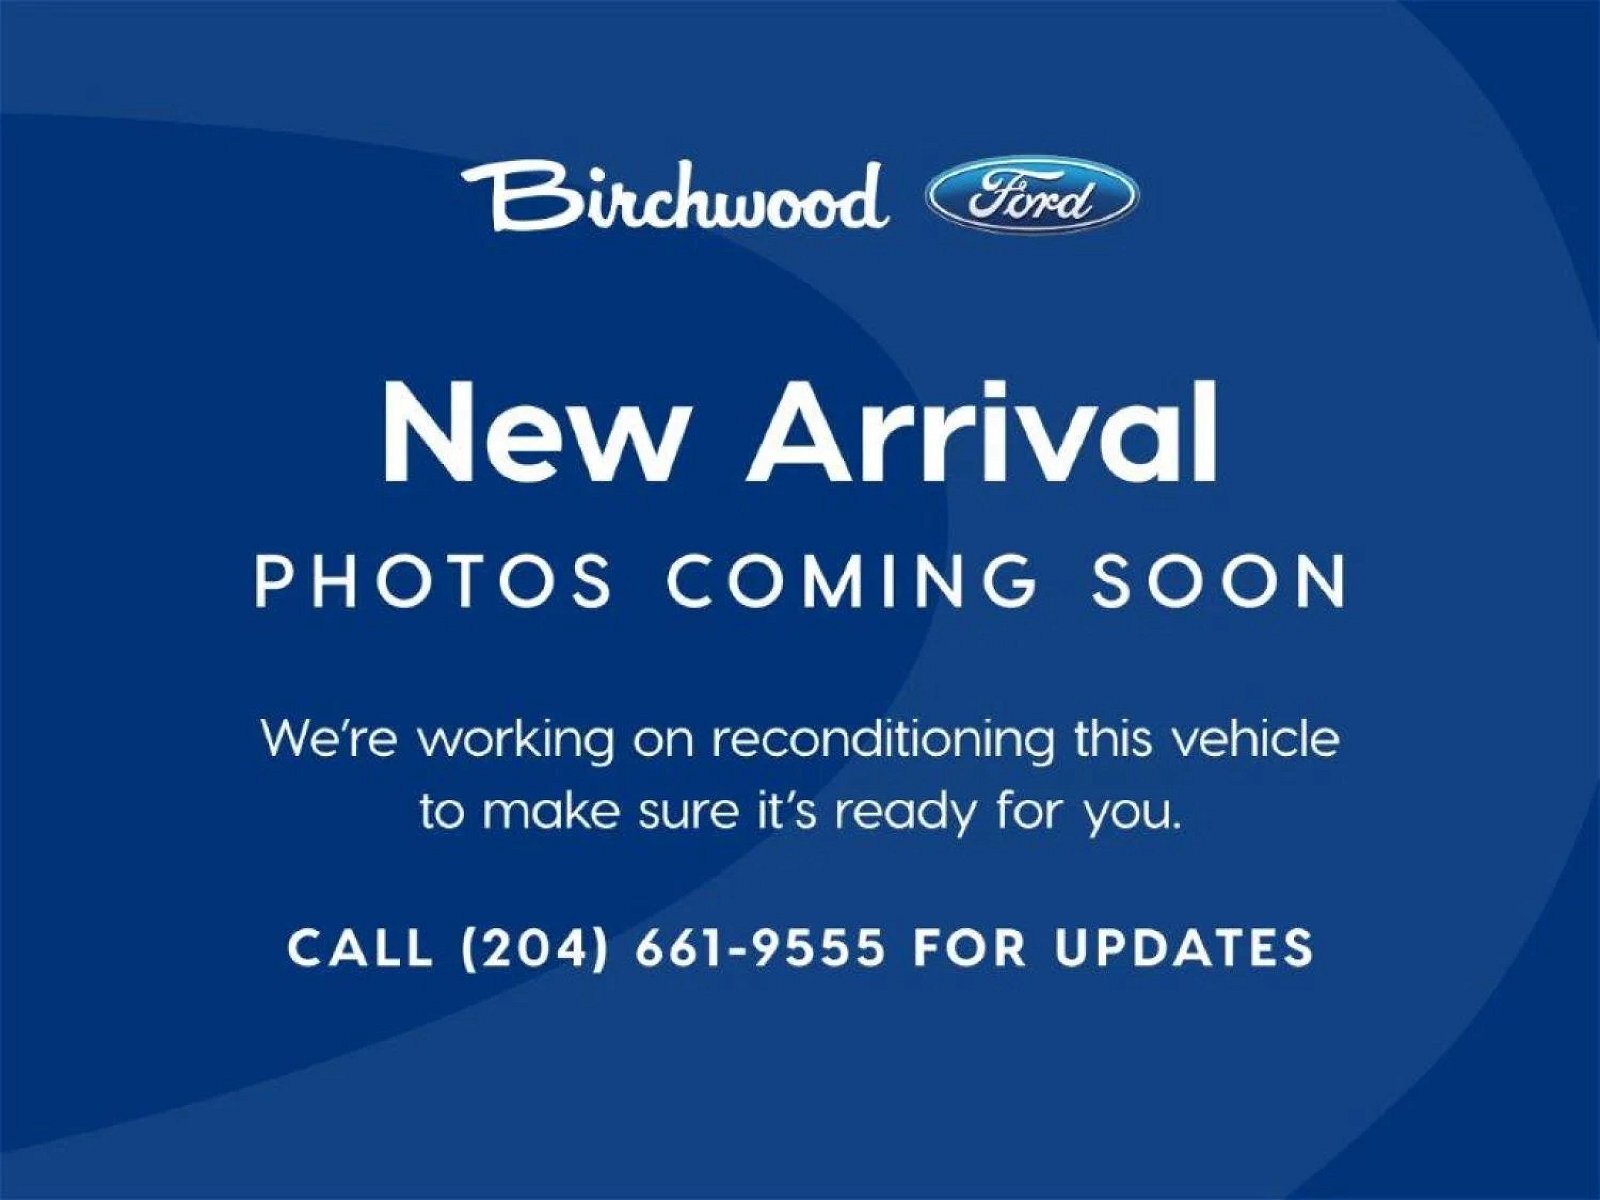 2017 Hyundai Tucson Premium AWD | Local Vehicle | Heated Steering | He